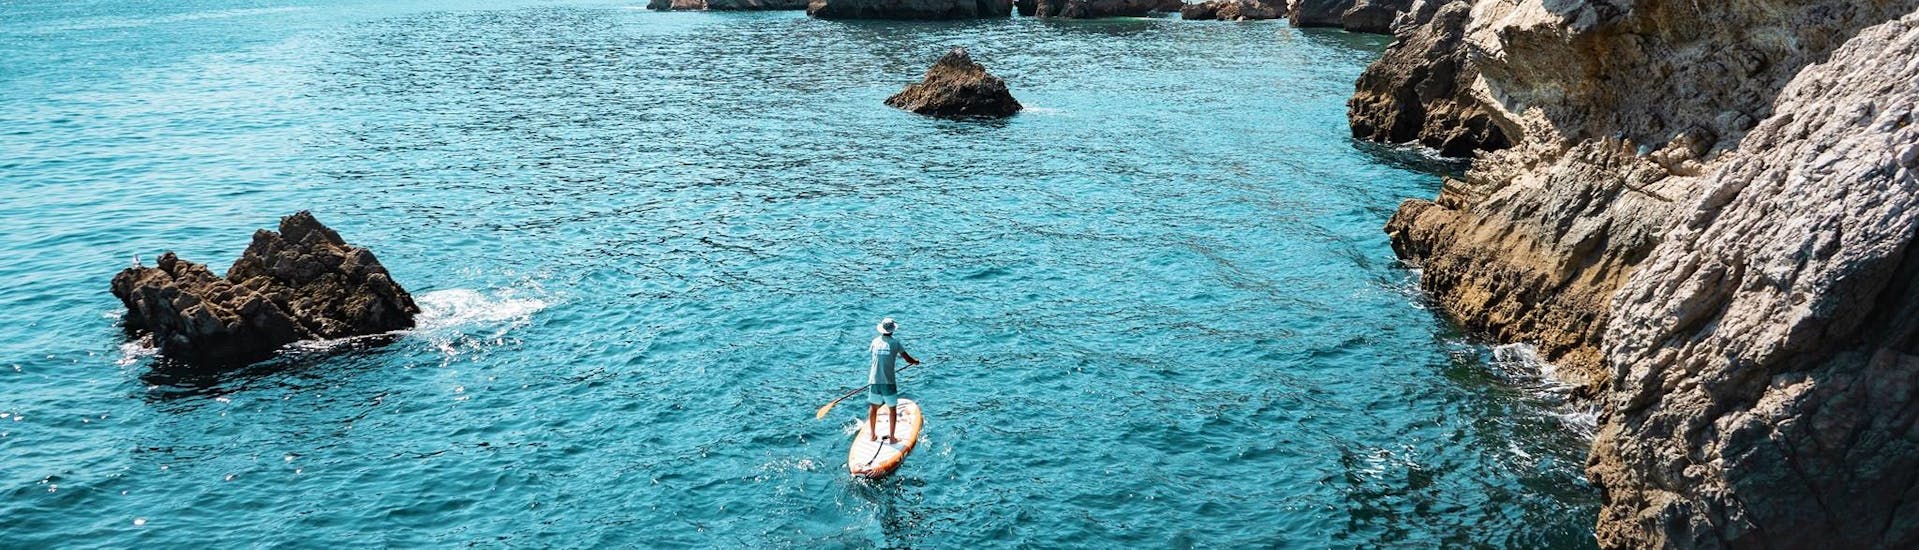 Gita in barca da Sesimbra a Parco Naturale di Arrábida con bagno in mare e visita turistica.